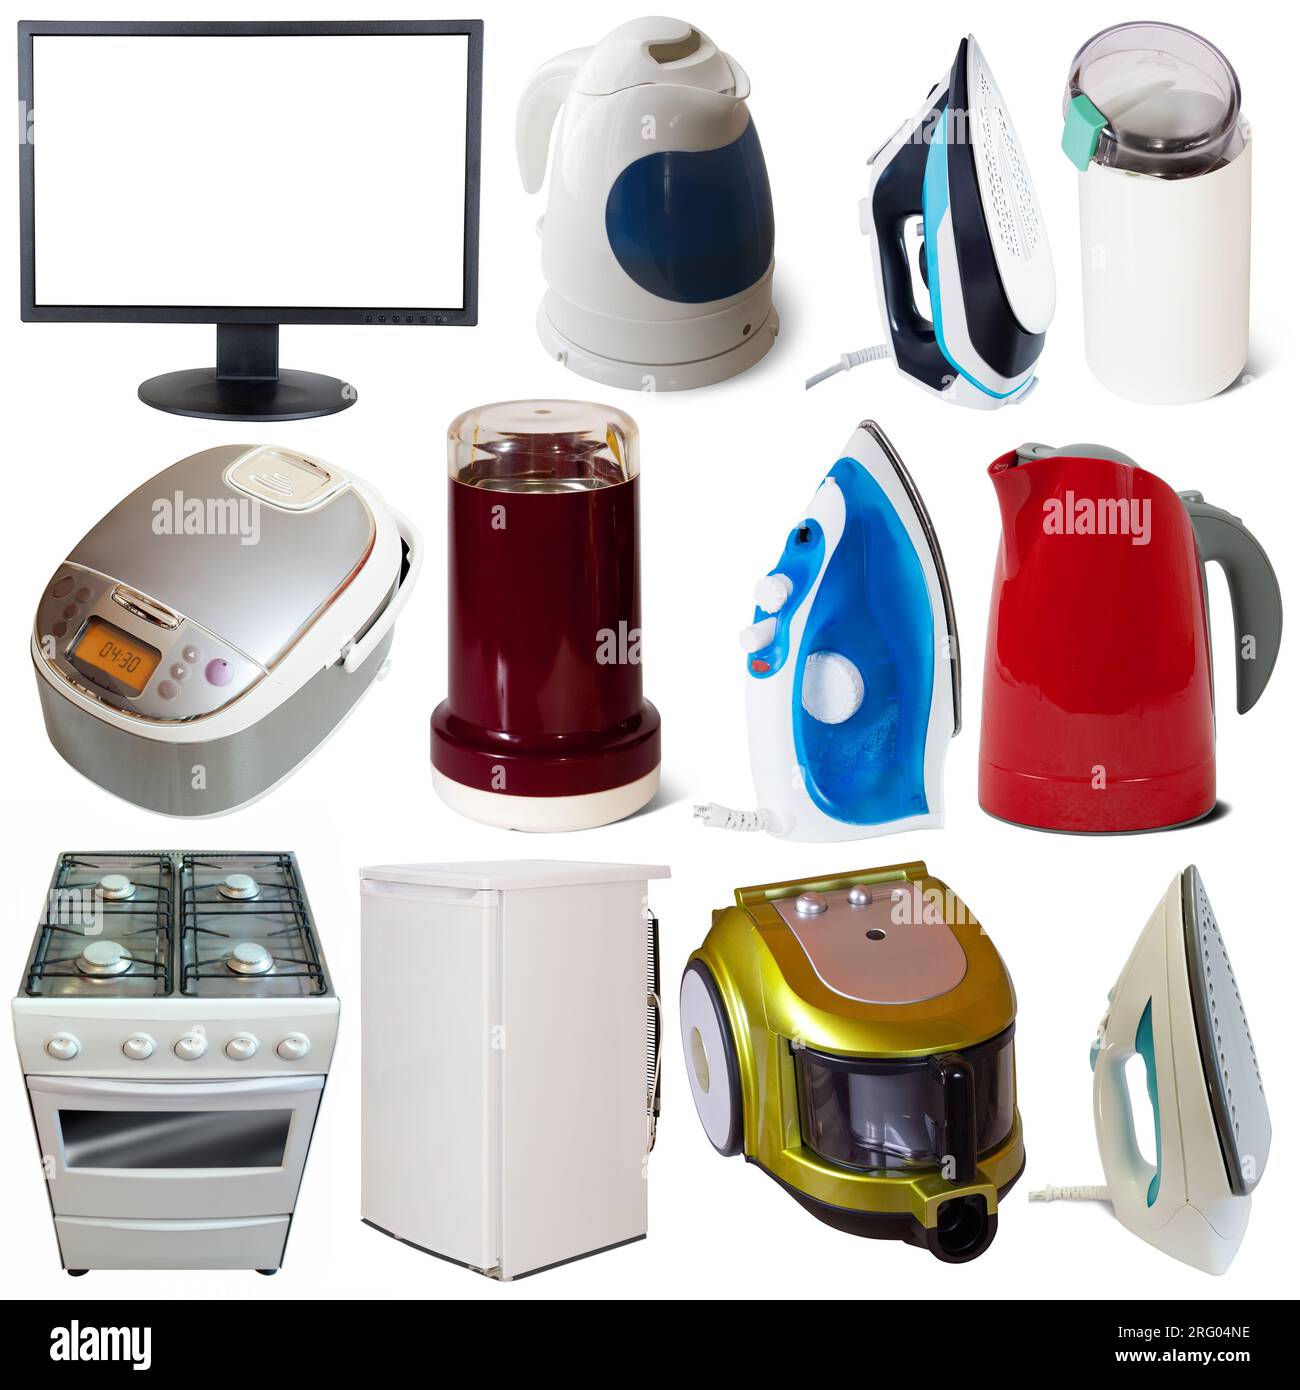 https://c8.alamy.com/comp/2RG04NE/assortment-of-household-appliances-isolated-on-white-background-2RG04NE.jpg